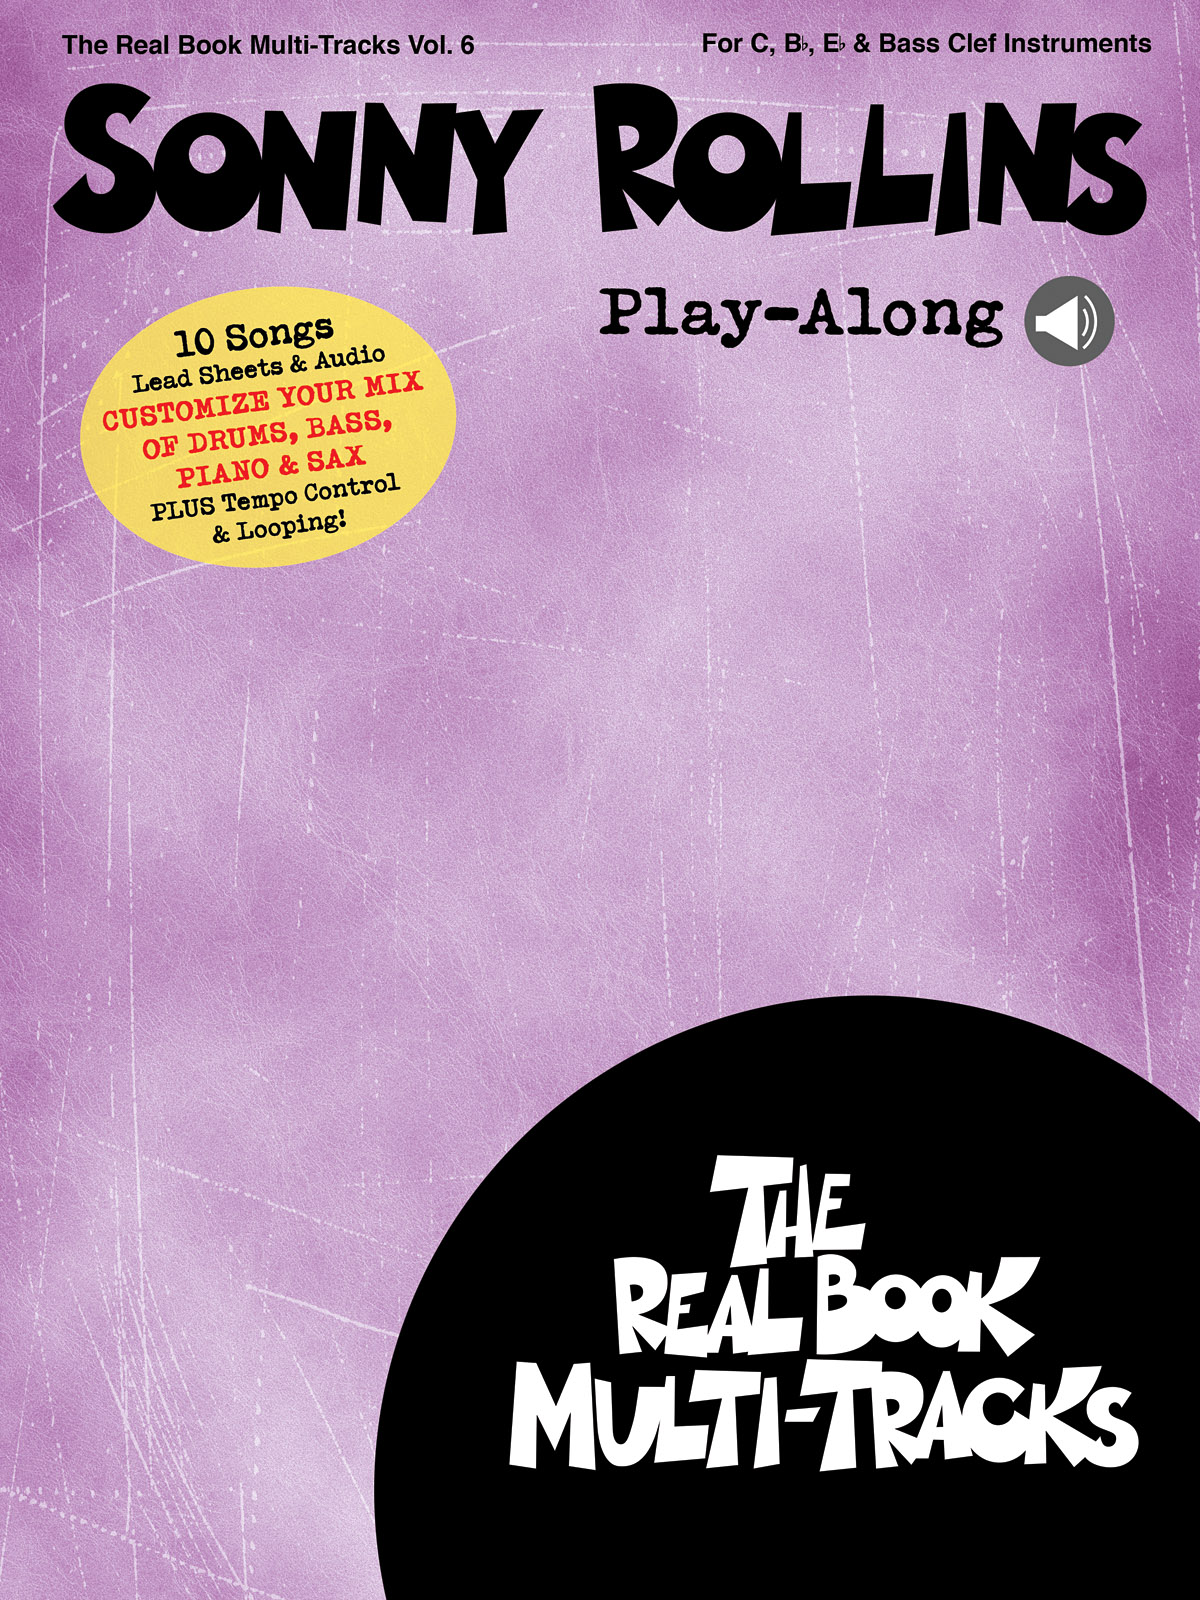 Sonny Rollins Play-Along - Real Book Multi-Tracks Volume 6 pro ladění C, Bb a Eb